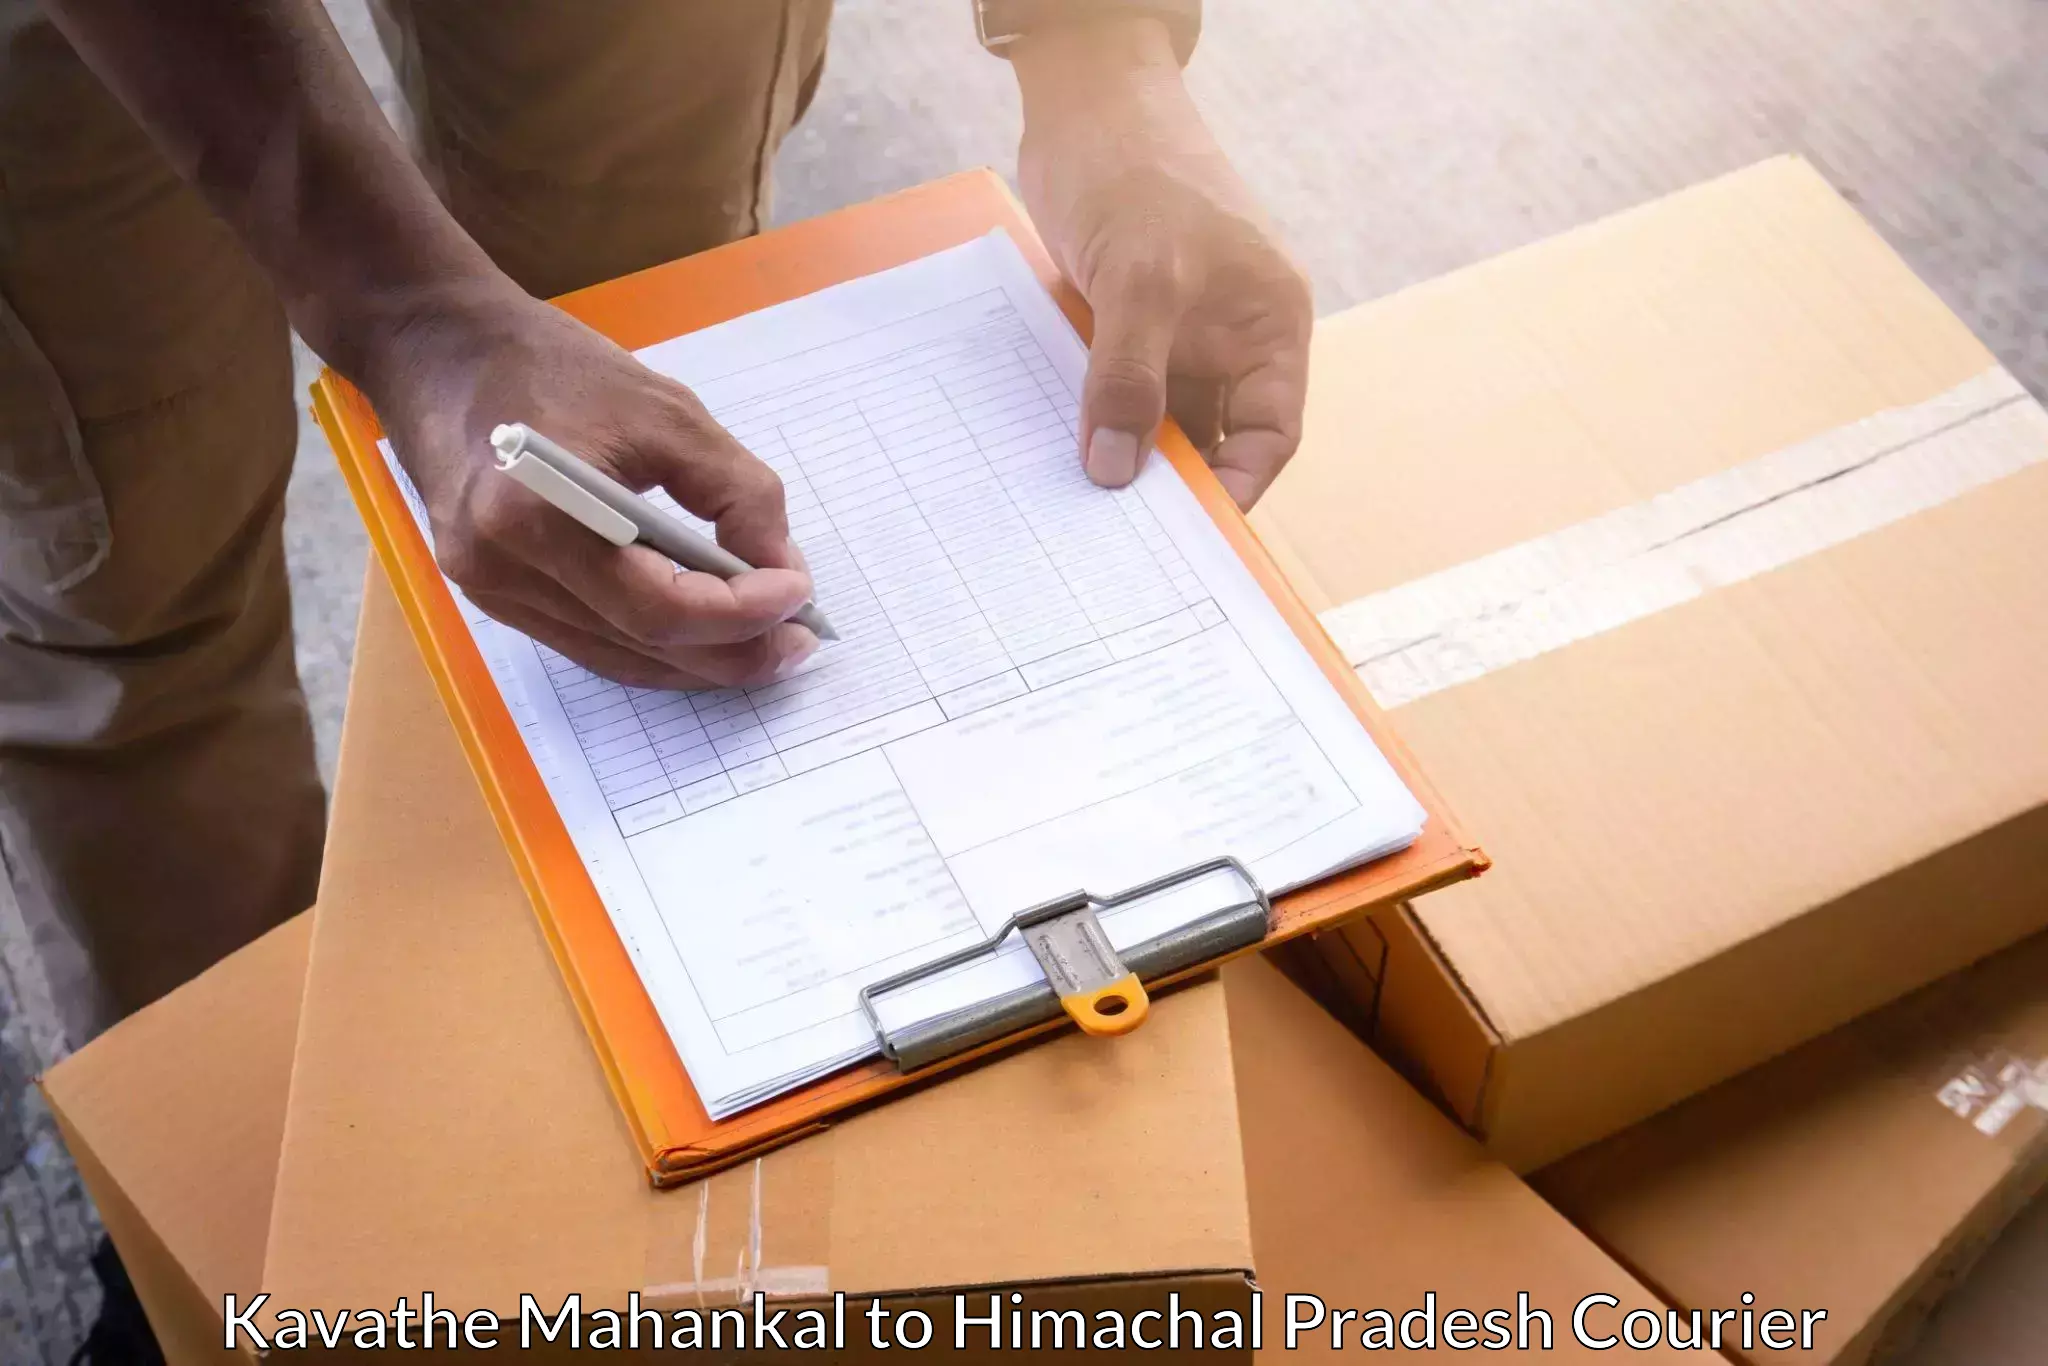 Global logistics network Kavathe Mahankal to Nalagarh